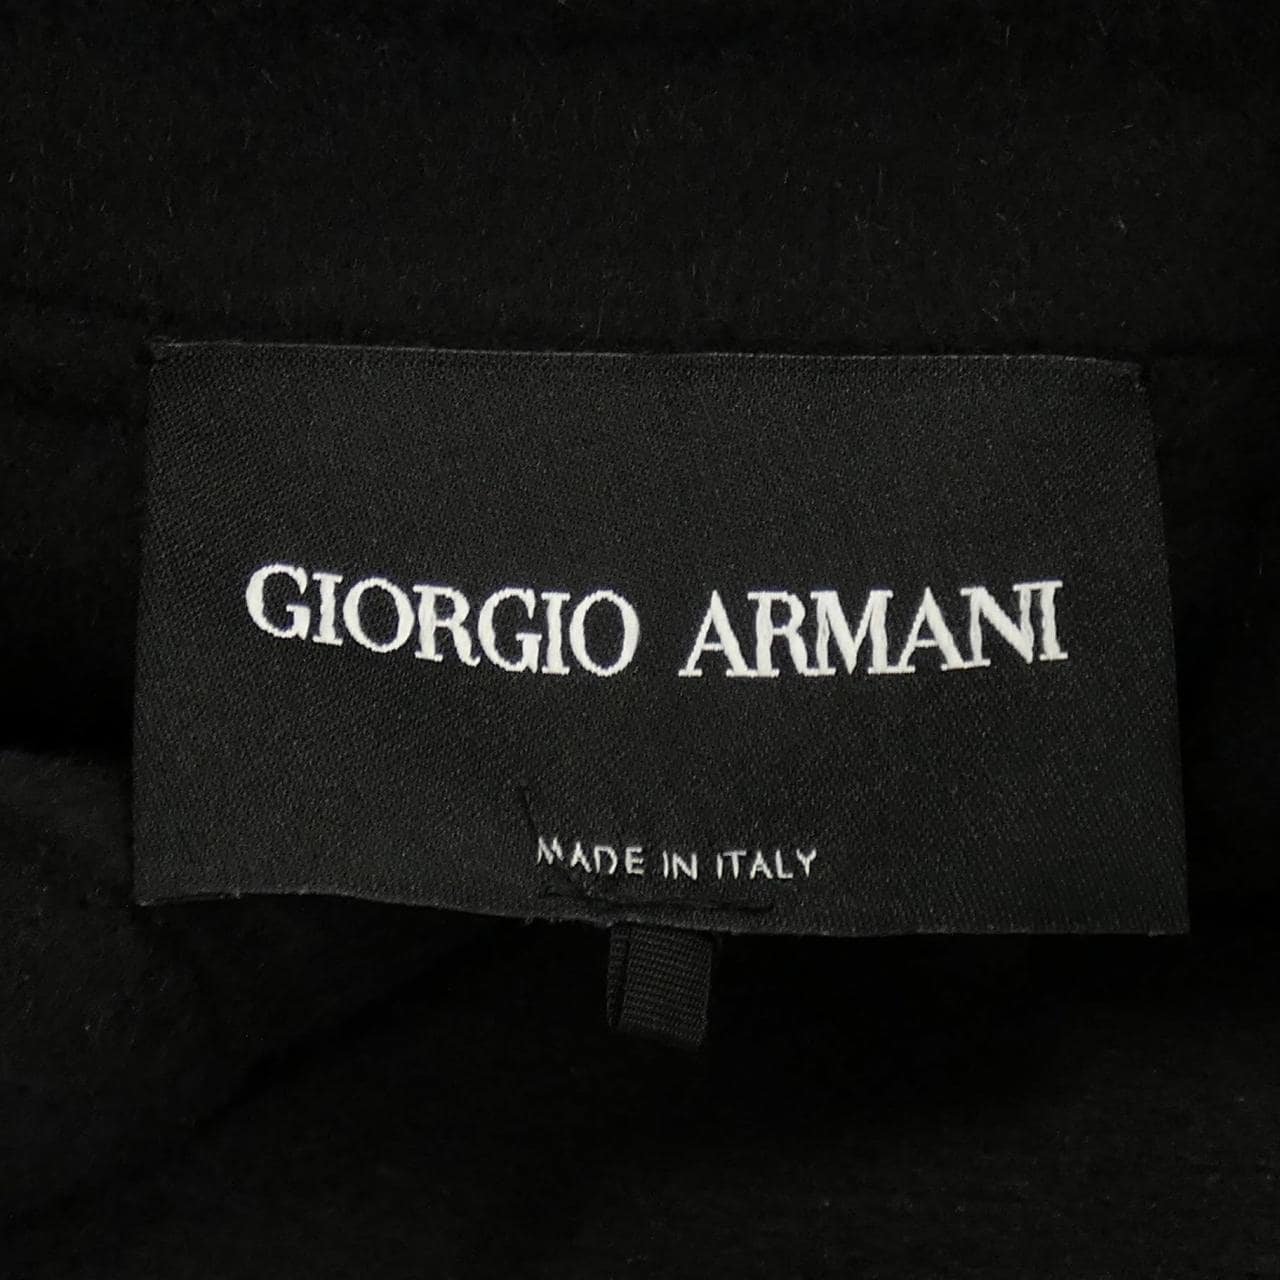 Giorgio Armani GIORGIO ARMANI coat